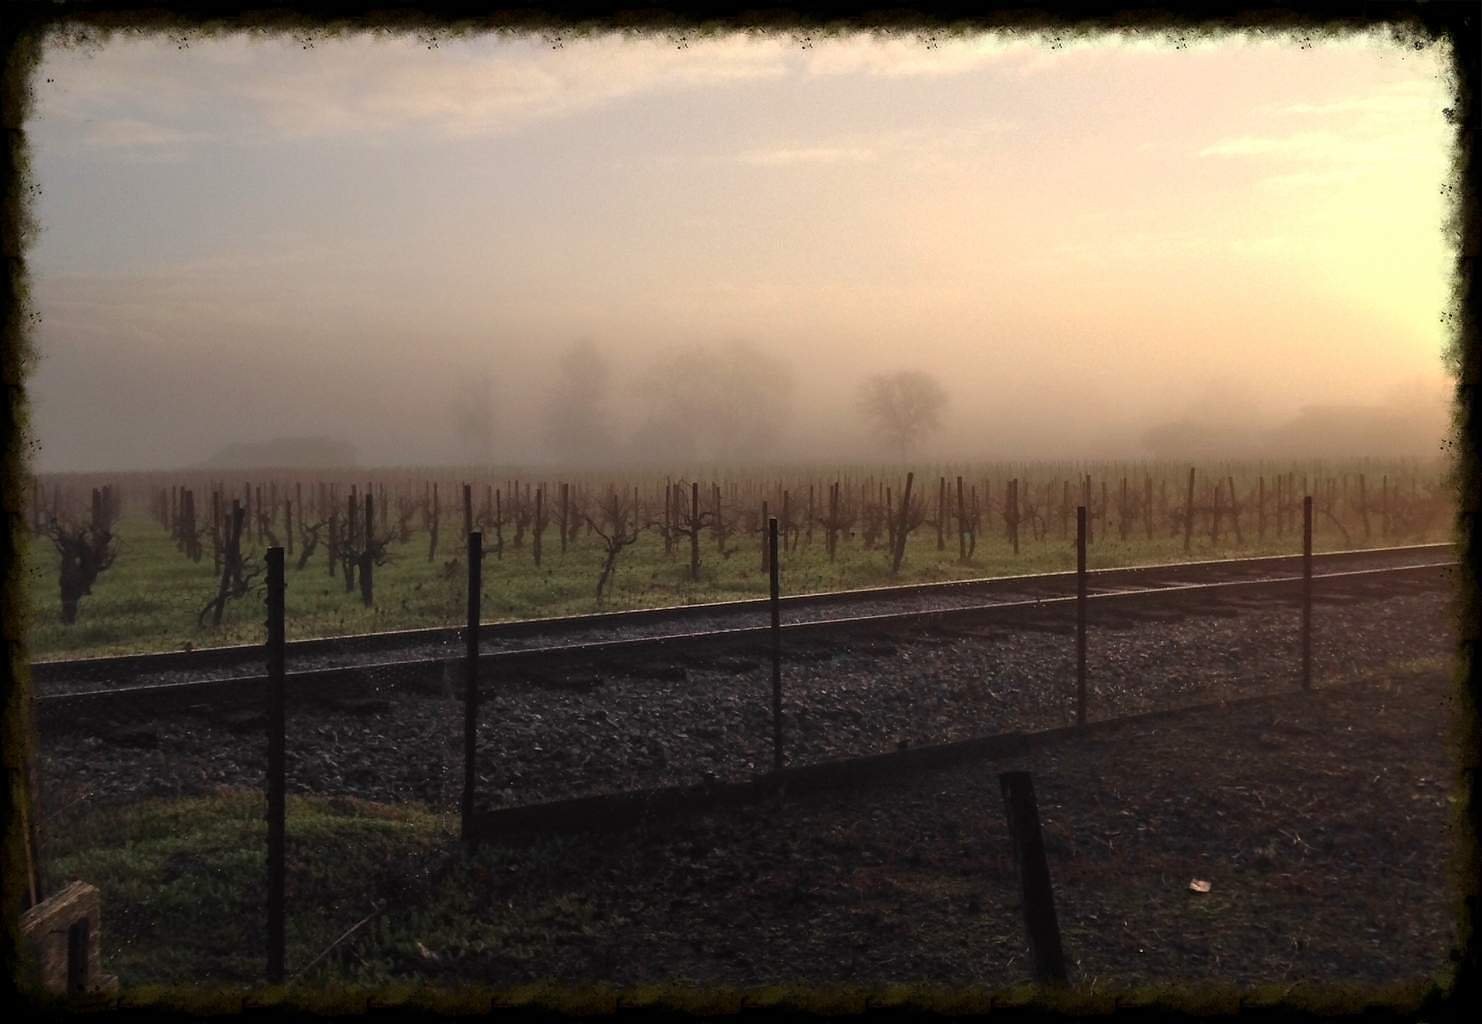 Vineyard in the Mist